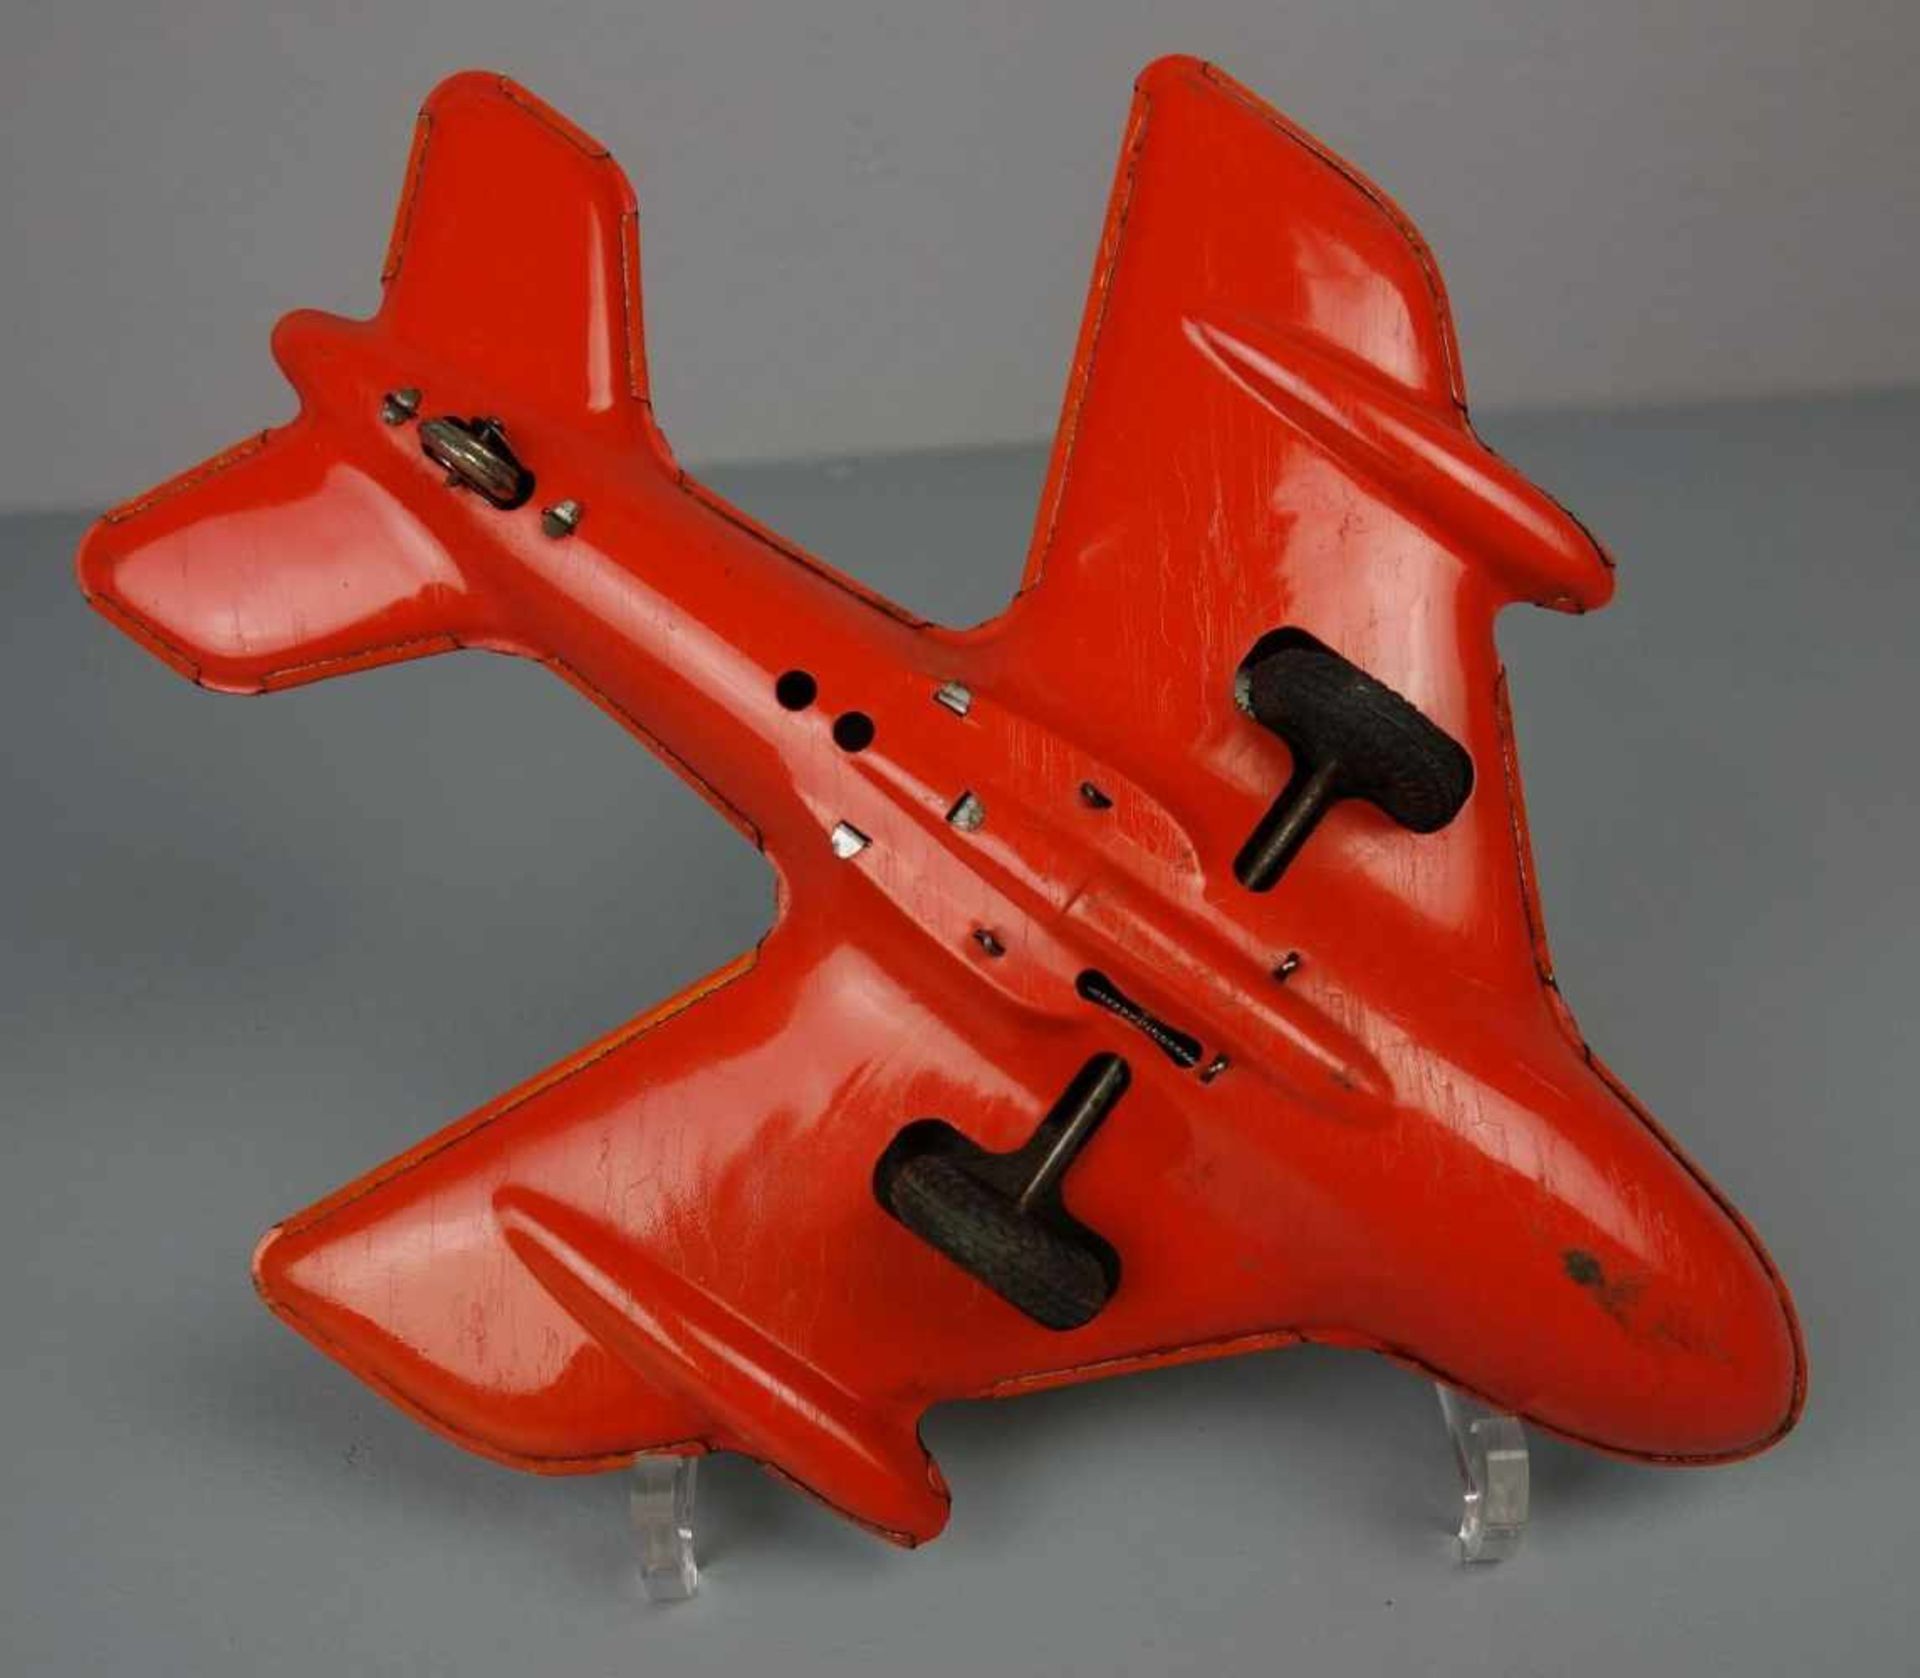 BLECHSPIELZEUG: TECHNOFIX FLUGZEUG / tin toy plane, Mitte 20. Jh., Manufaktur Gebrüder Einfalt - Bild 4 aus 4